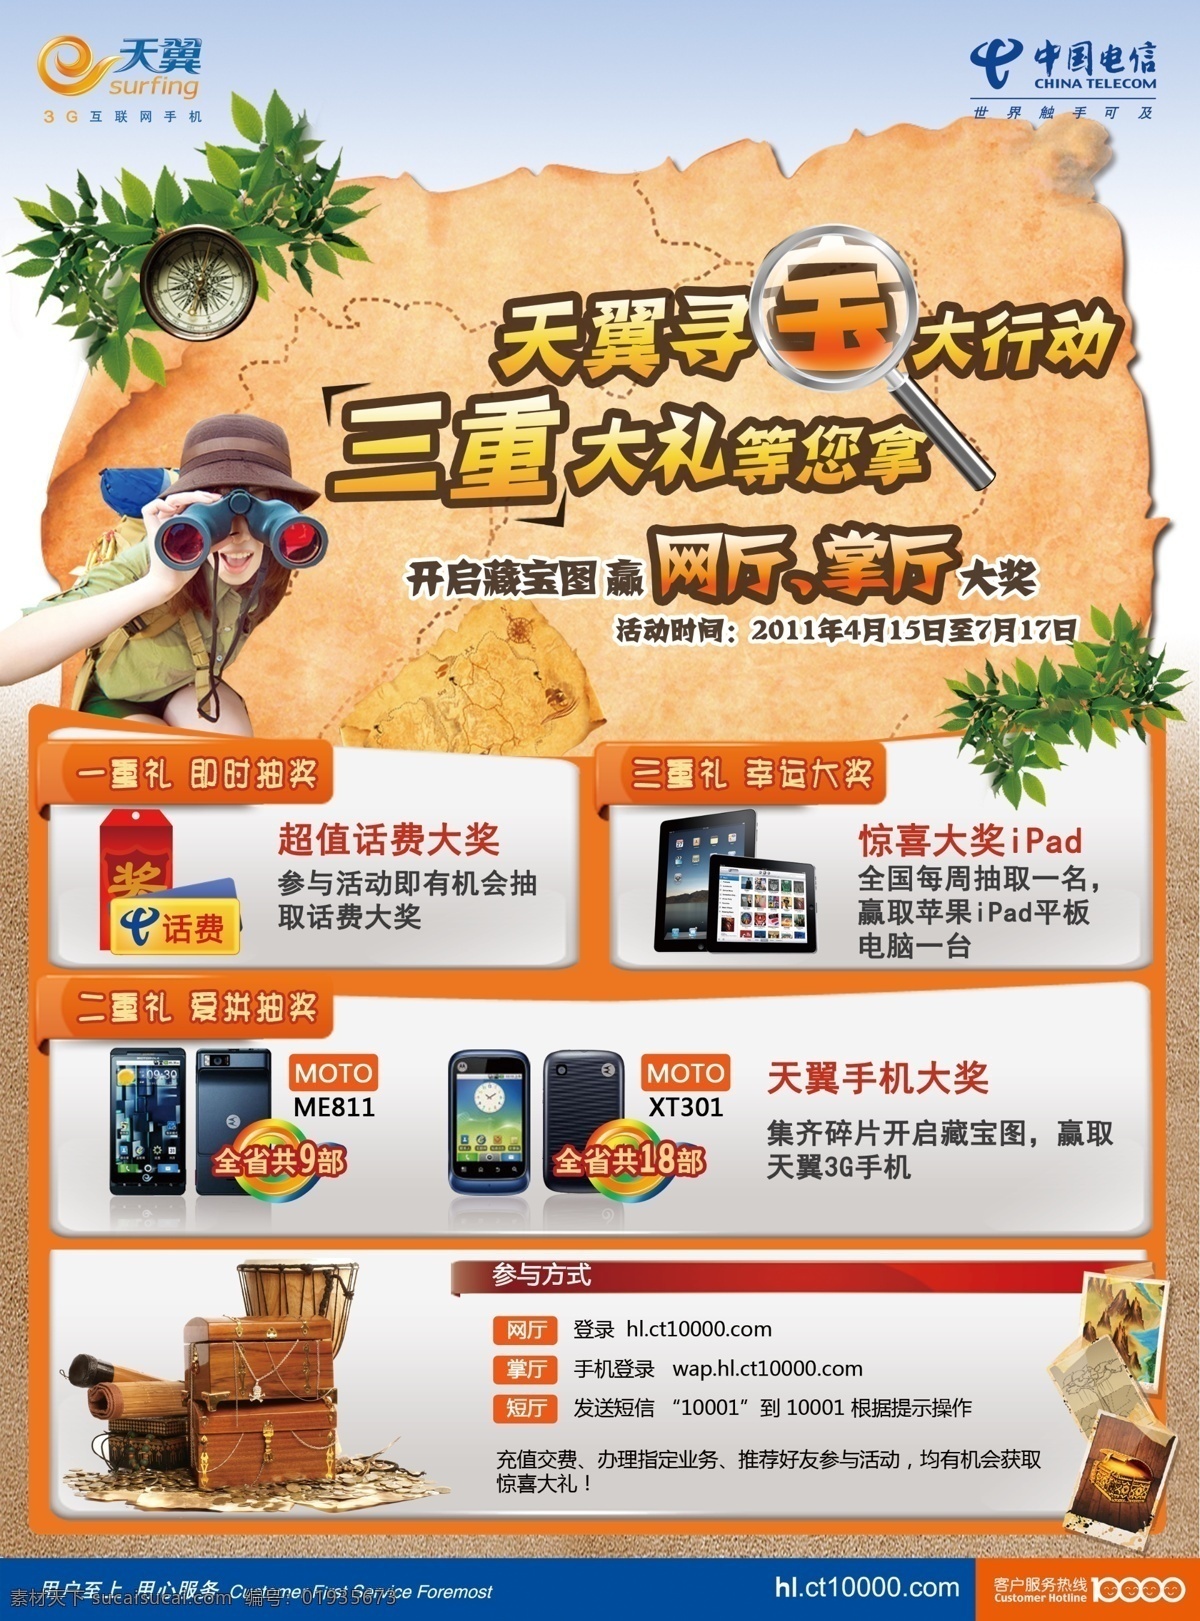 中国电信海报 电信 天翼 寻宝 海盗 手机